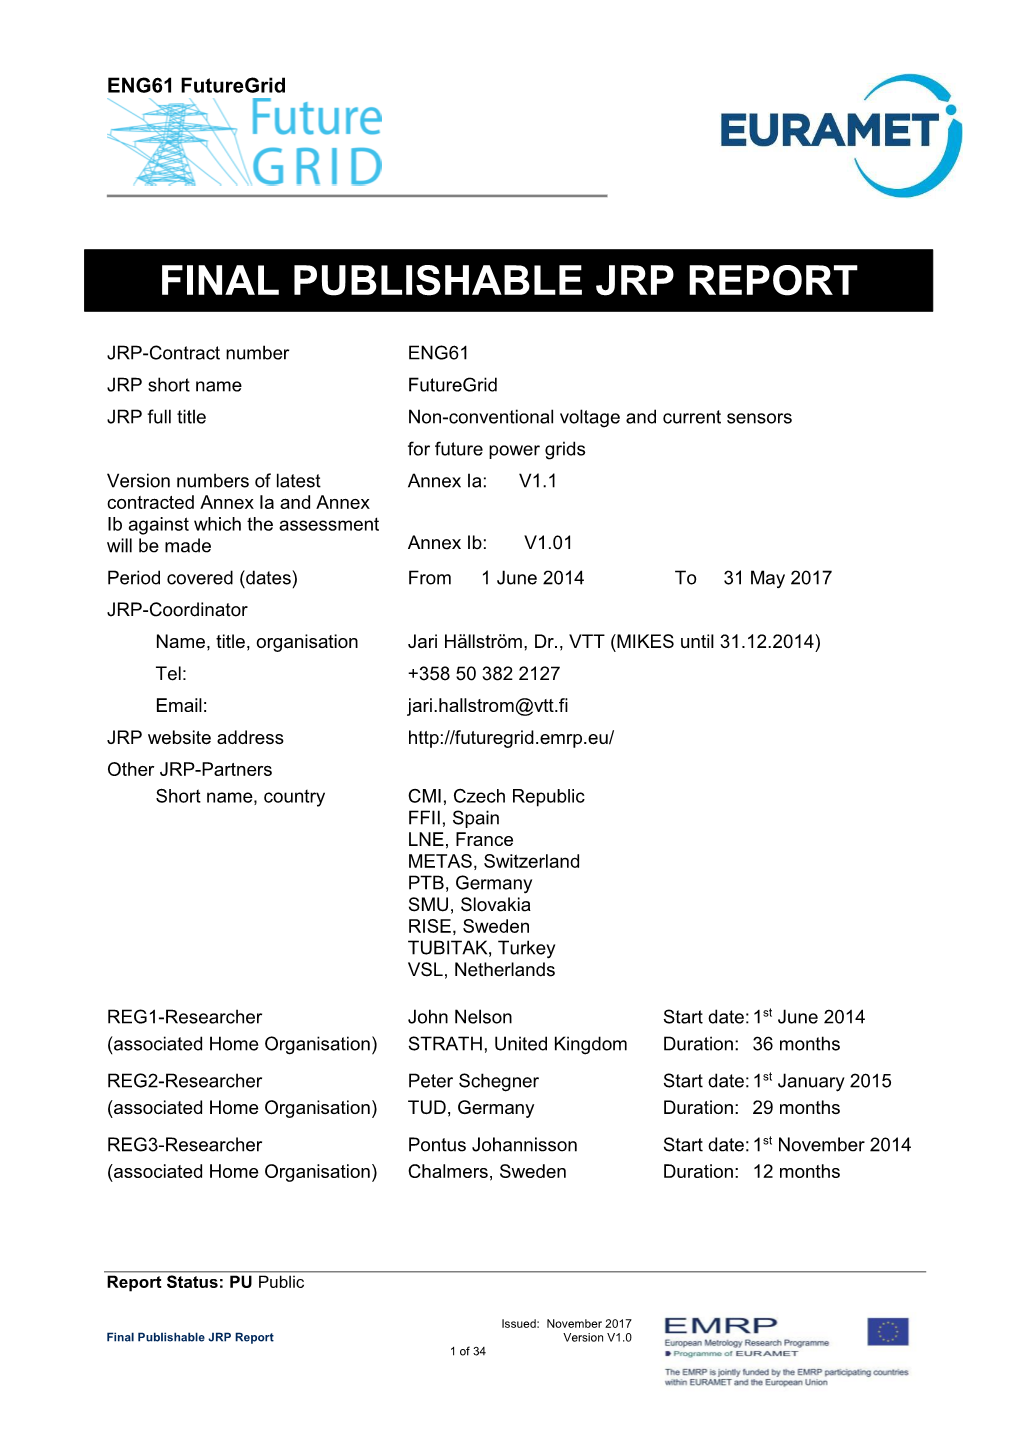 Final Publishable Jrp Report